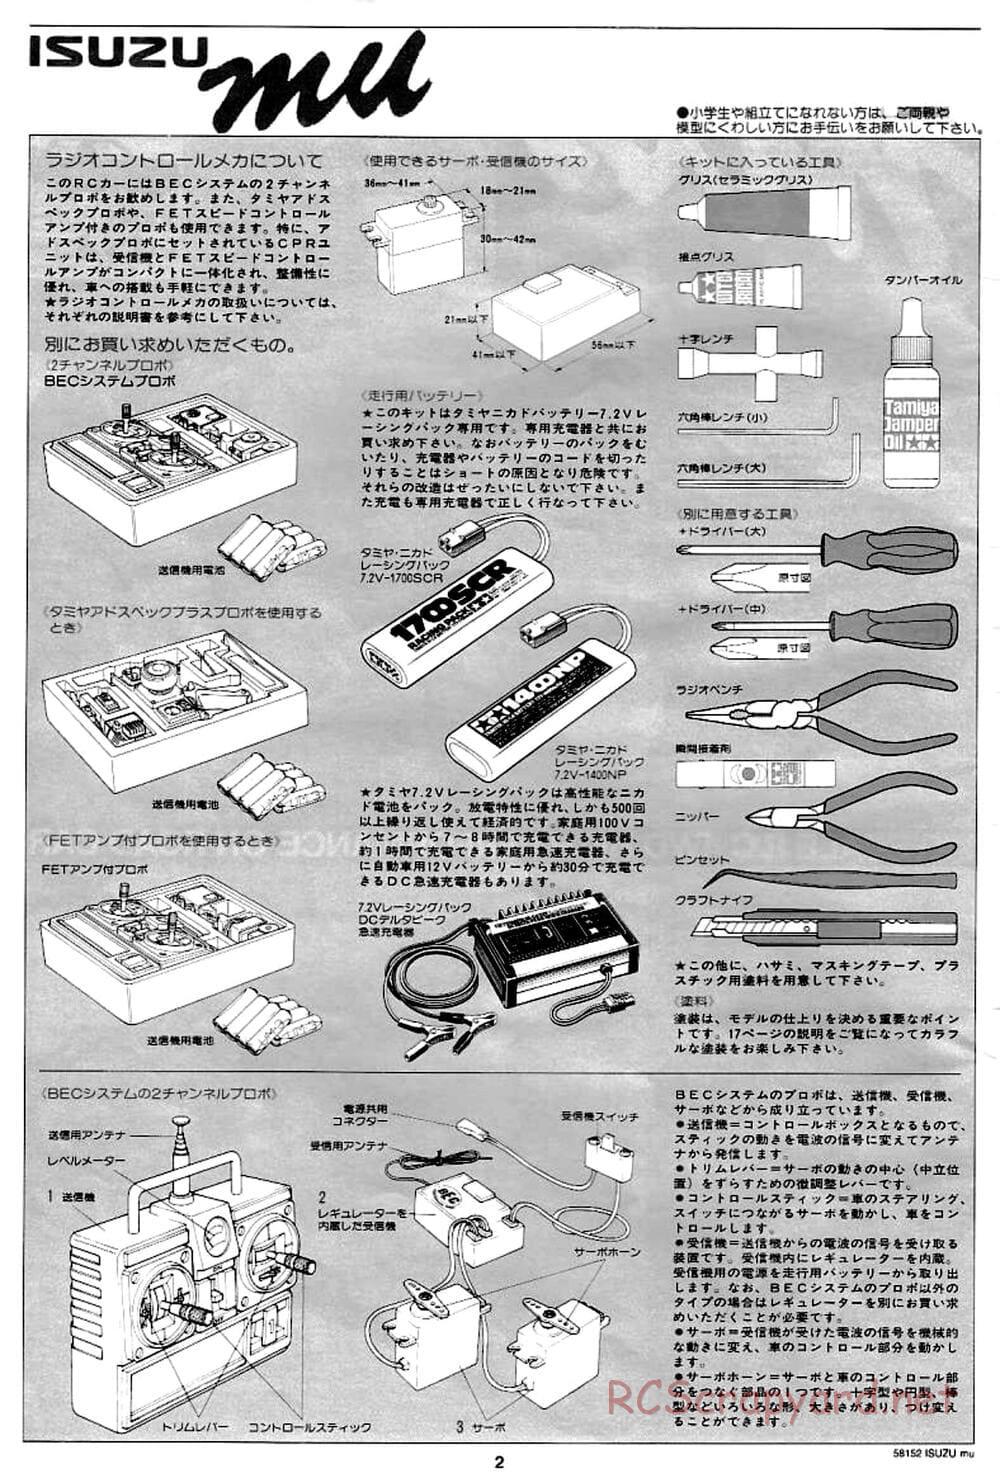 Tamiya - Isuzu Mu - CC-01 Chassis - Manual - Page 2